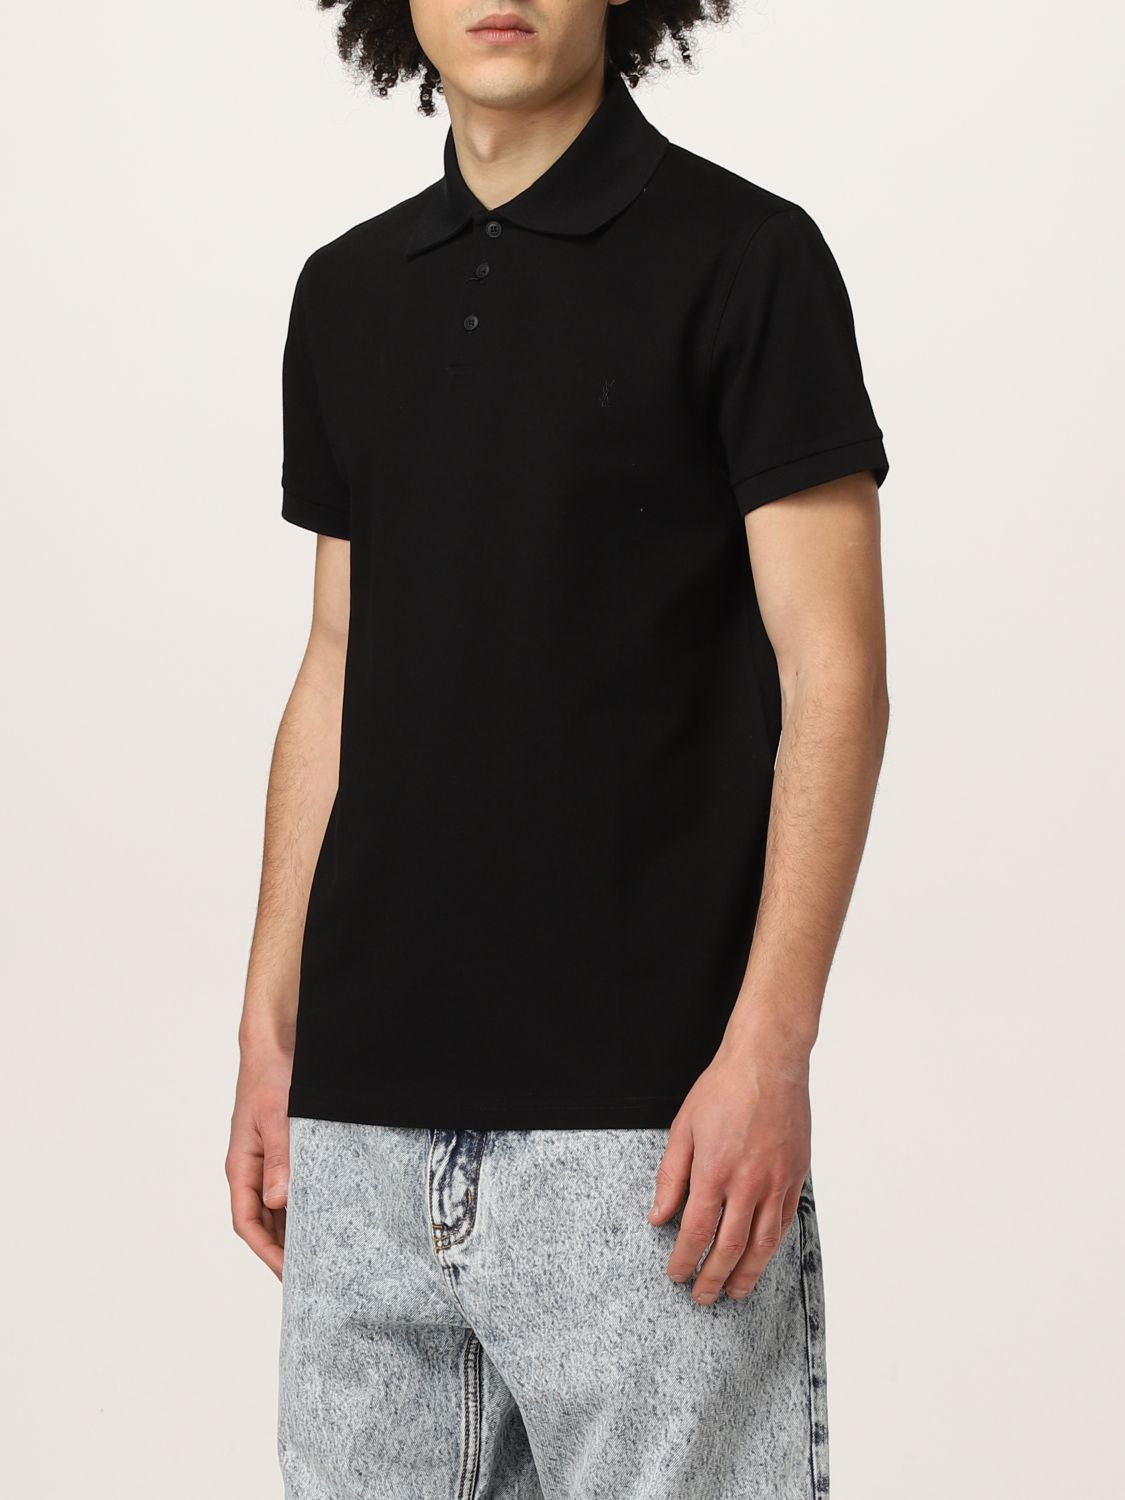 Polo shirt Saint Laurent: Saint Laurent piqué cotton basic polo t-shirt black 4